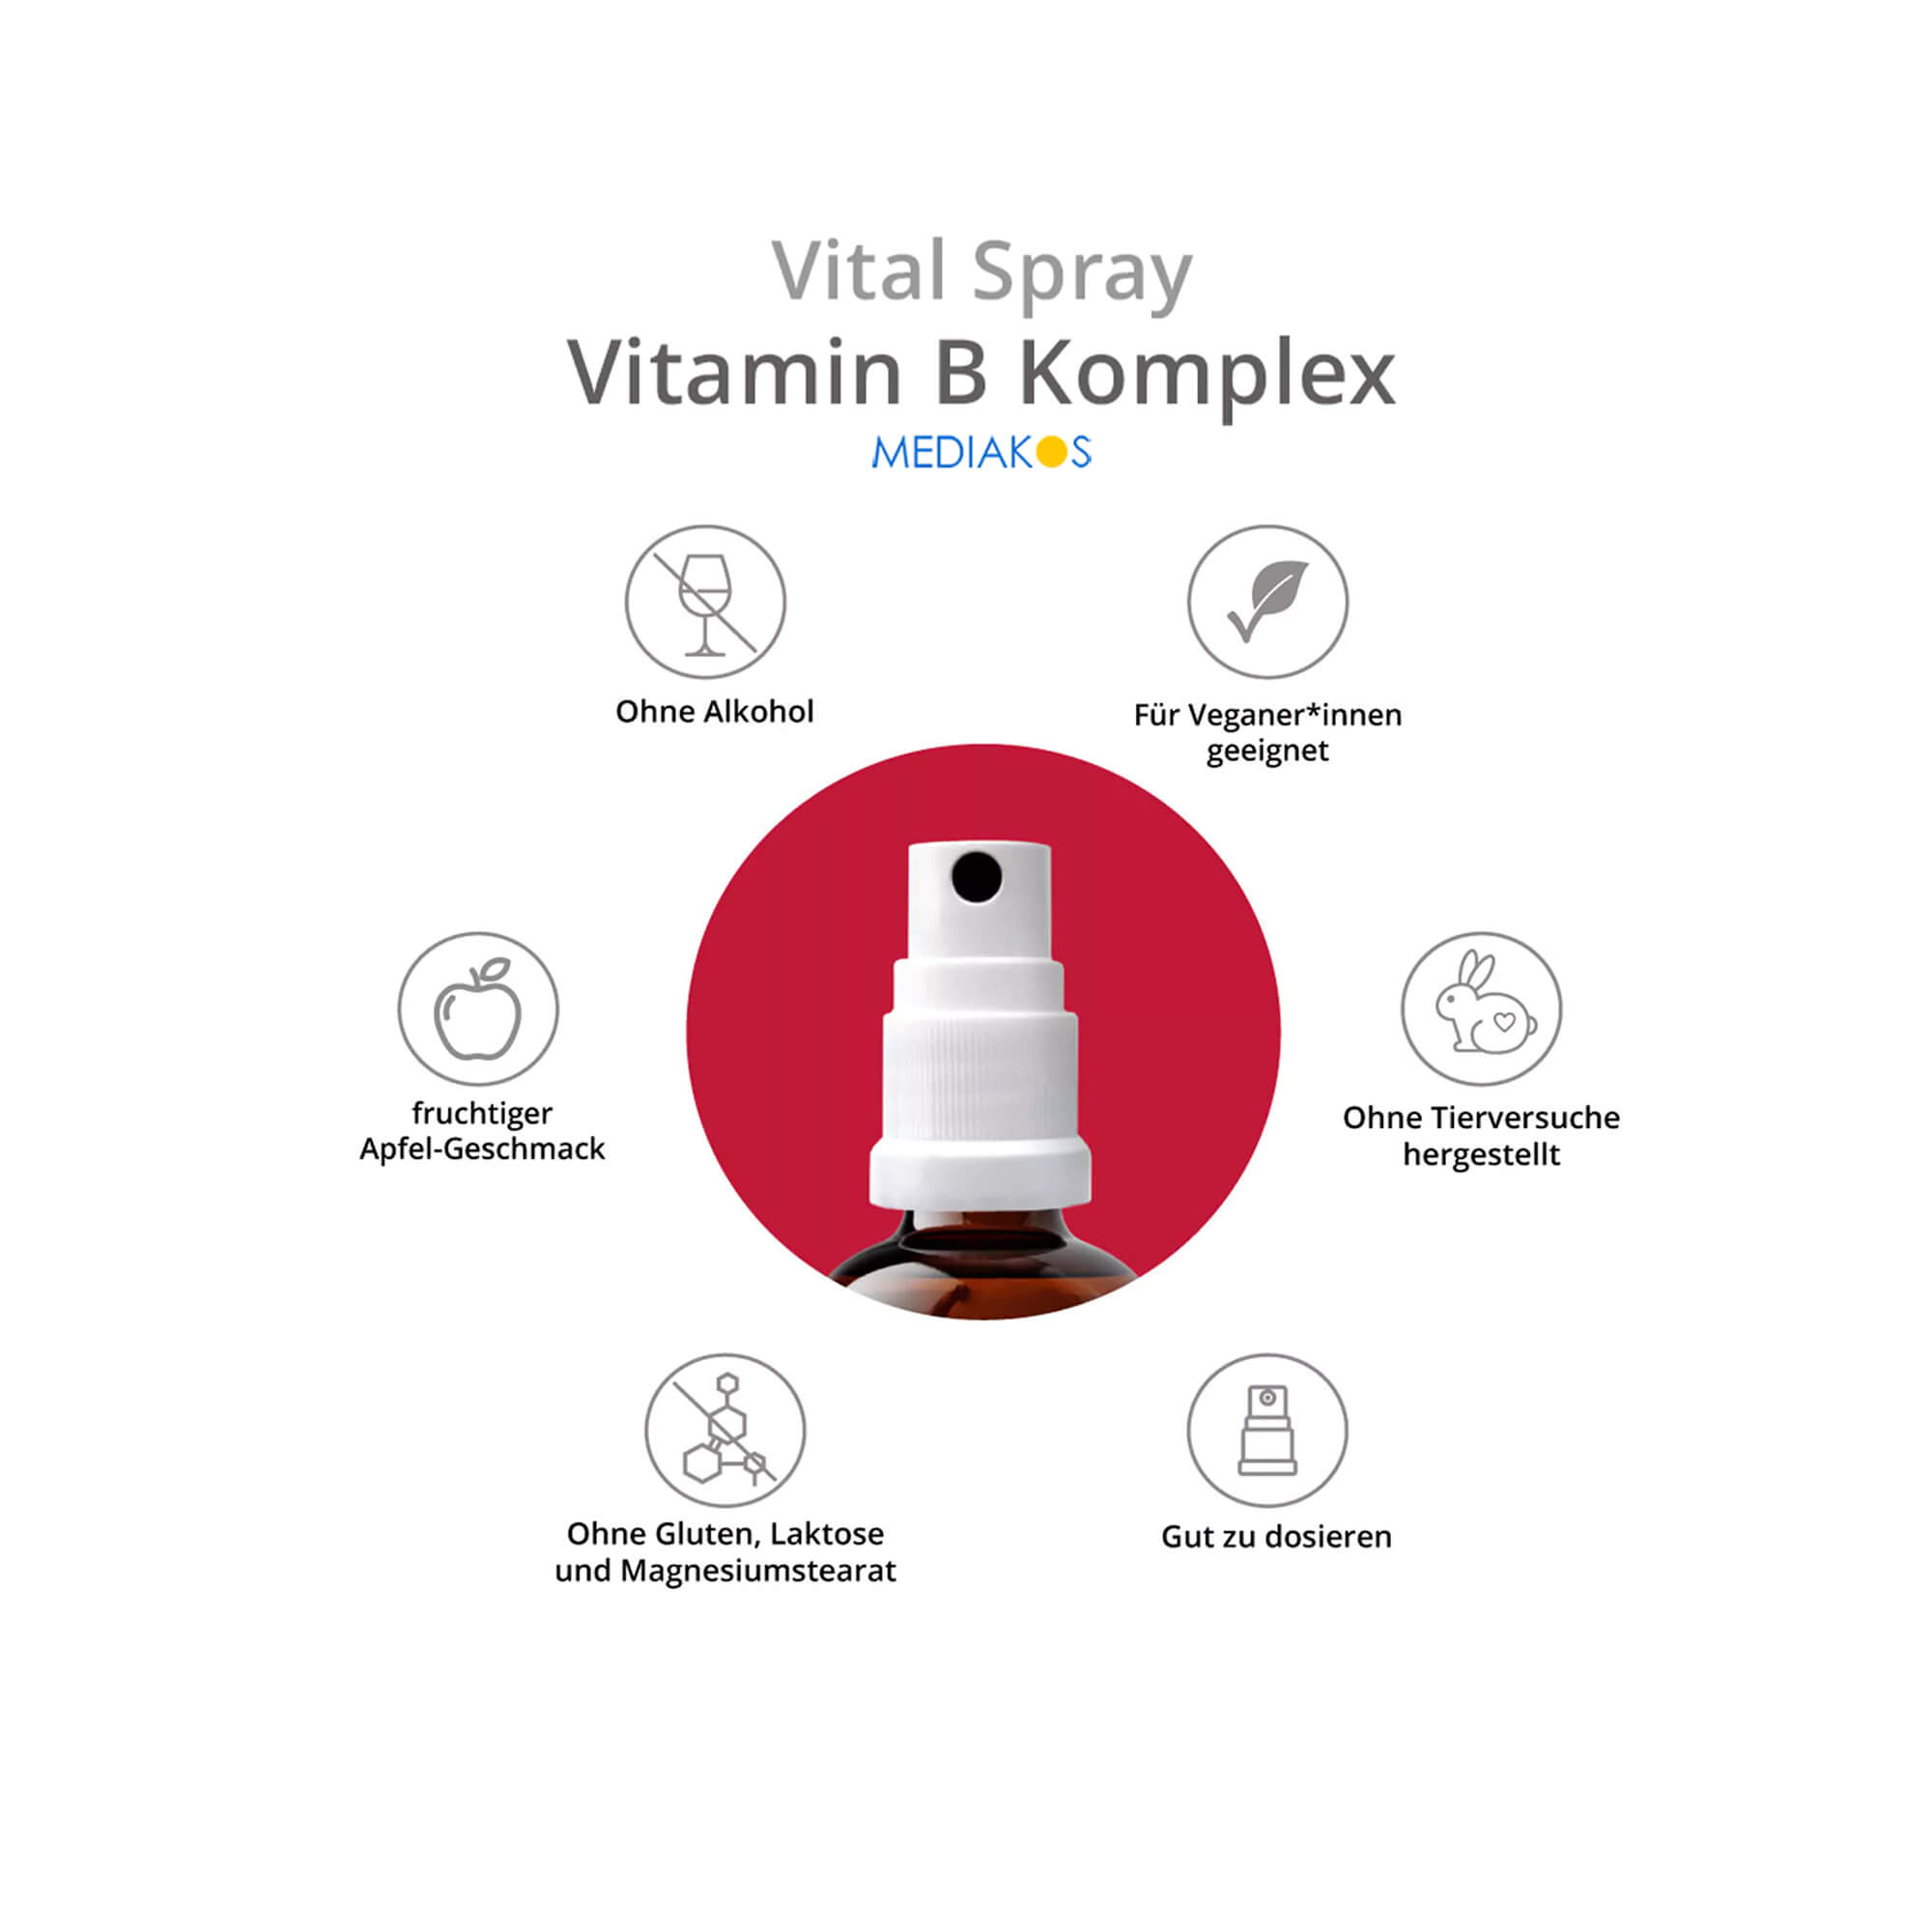 Mediakos Vitamin B-Komplex Vital Spray Eigenschaften